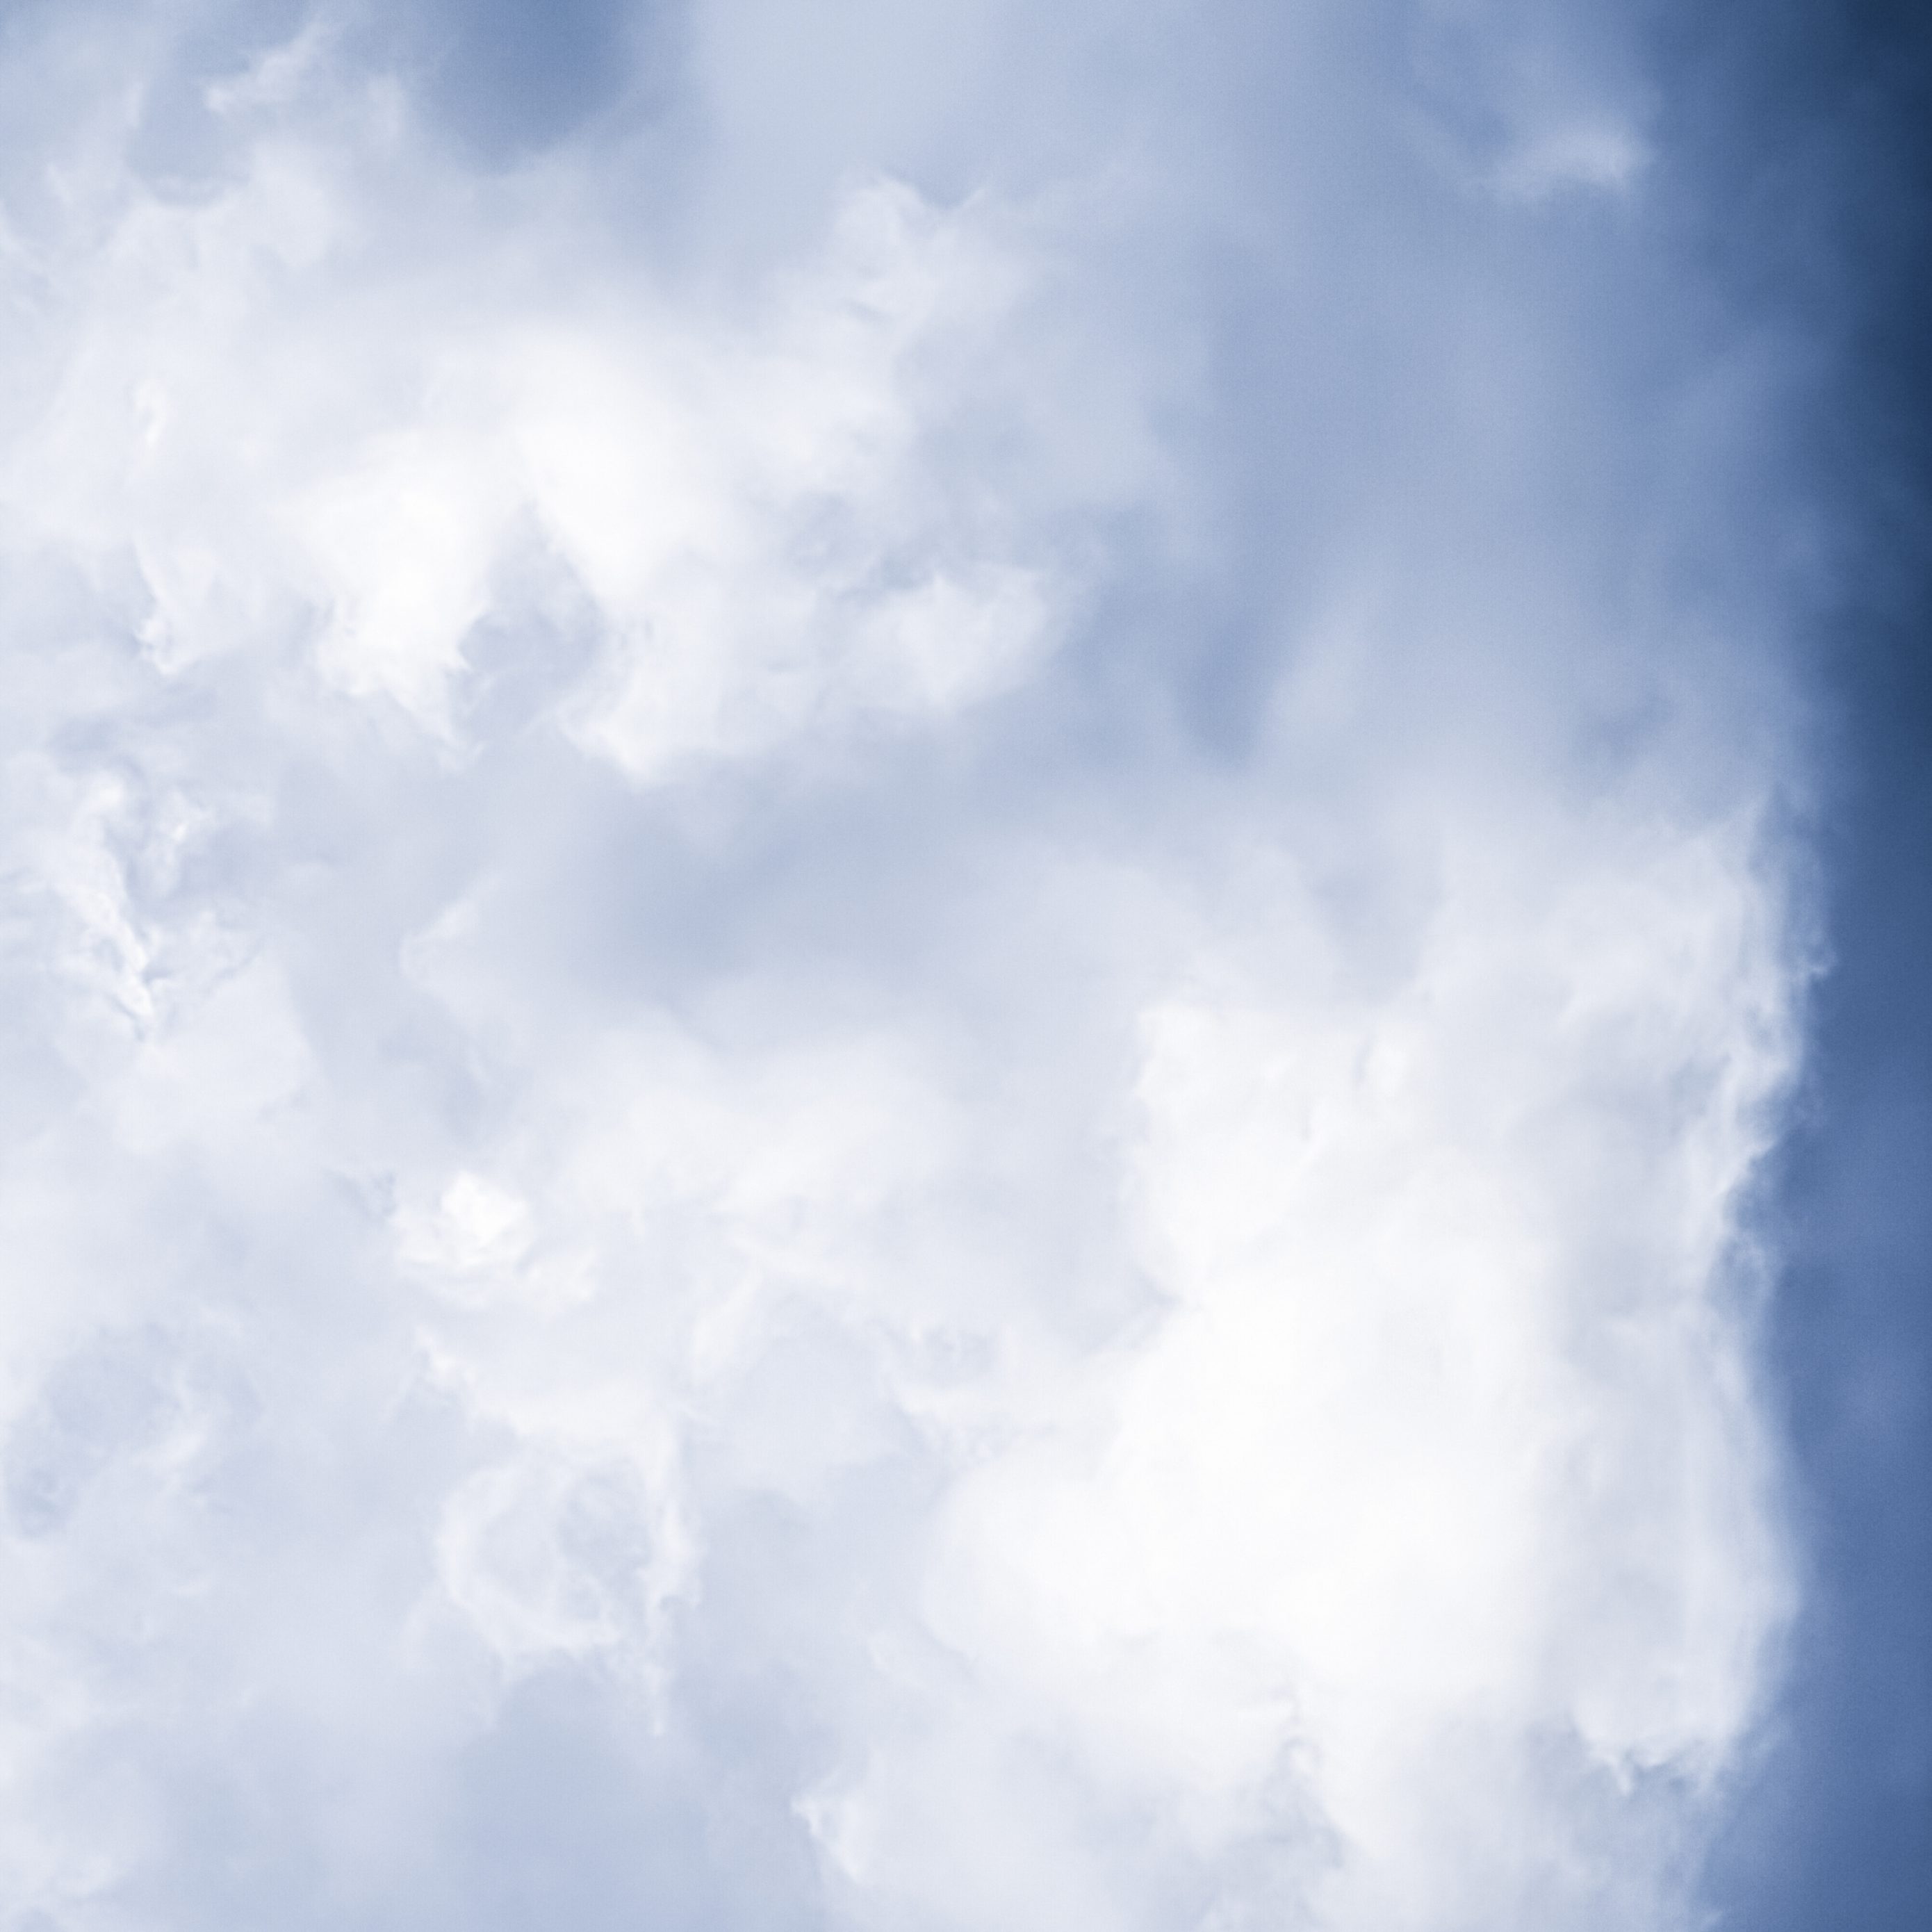 2780x2780 Parallax wallpaper 4k Minimalist Blue Sky Cloudy iPad Wallpaper 2780x2780 pixels resolution